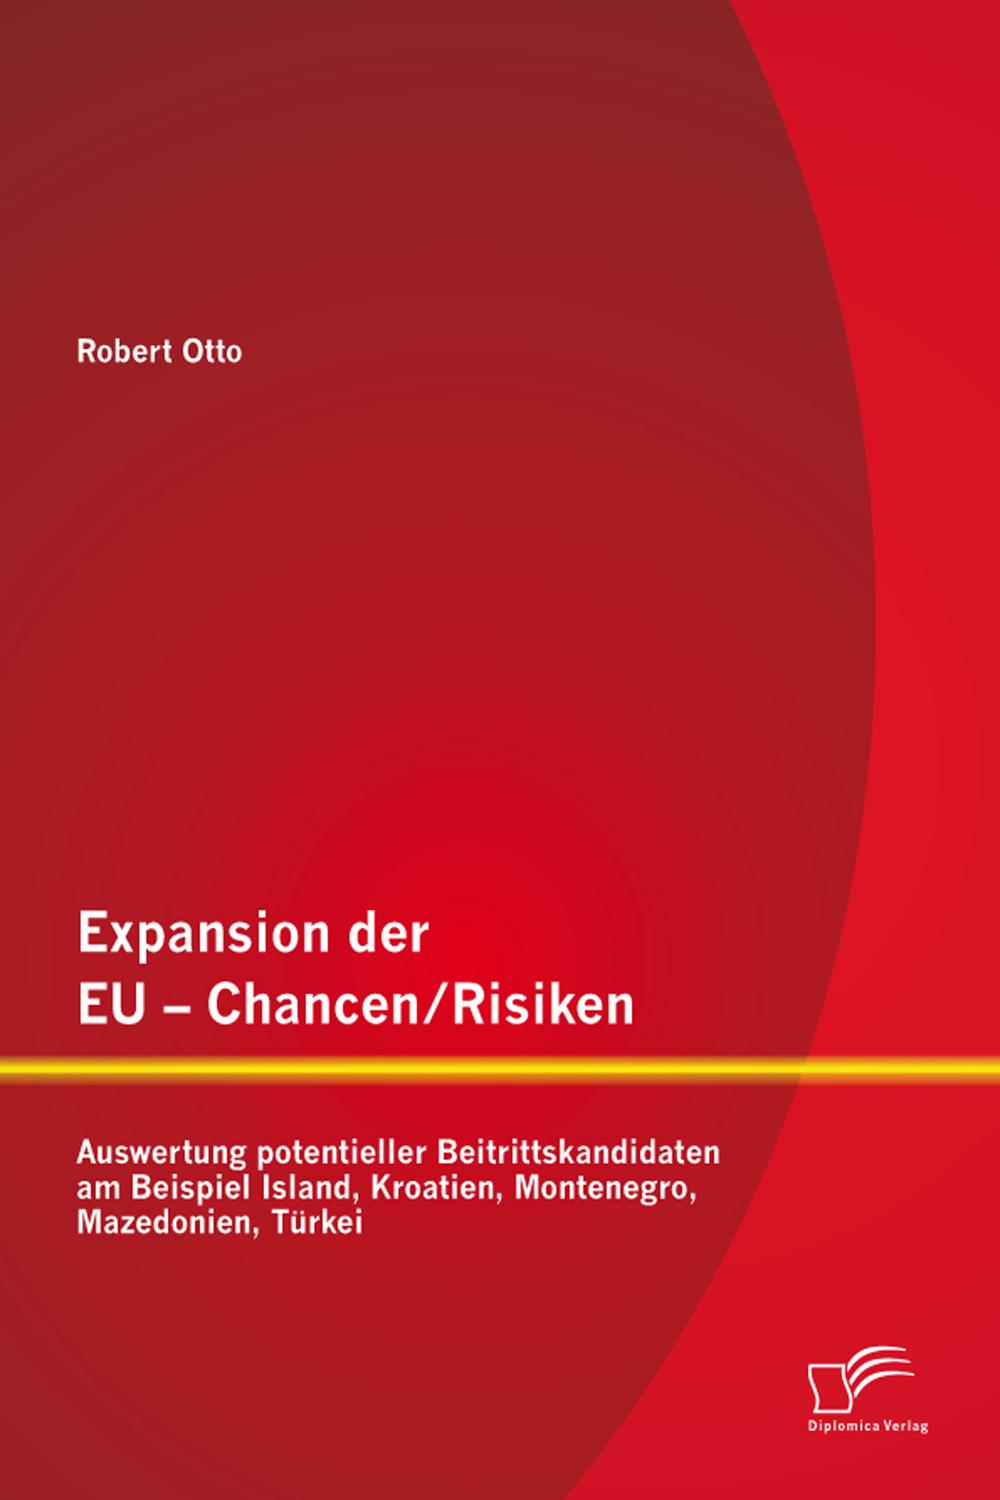 Expansion der EU - Chancen / Risiken: Auswertung potentieller Beitrittskandidaten am Beispiel Island, Kroatien, Montenegro, Mazedonien, Türkei - Robert Otto